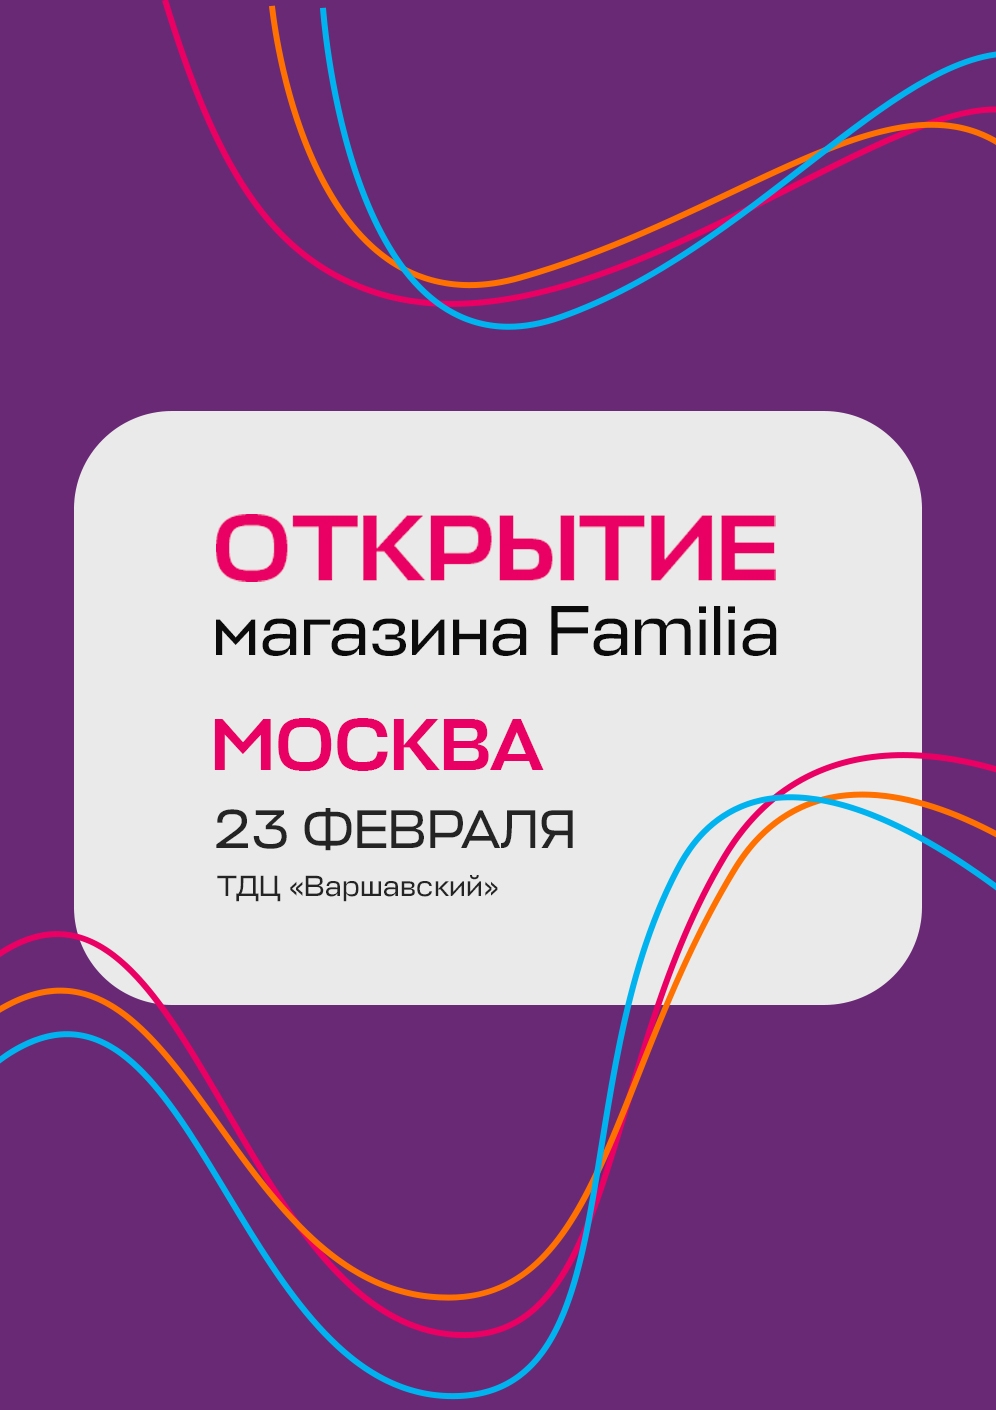 Открываем новую Familia в Москве!